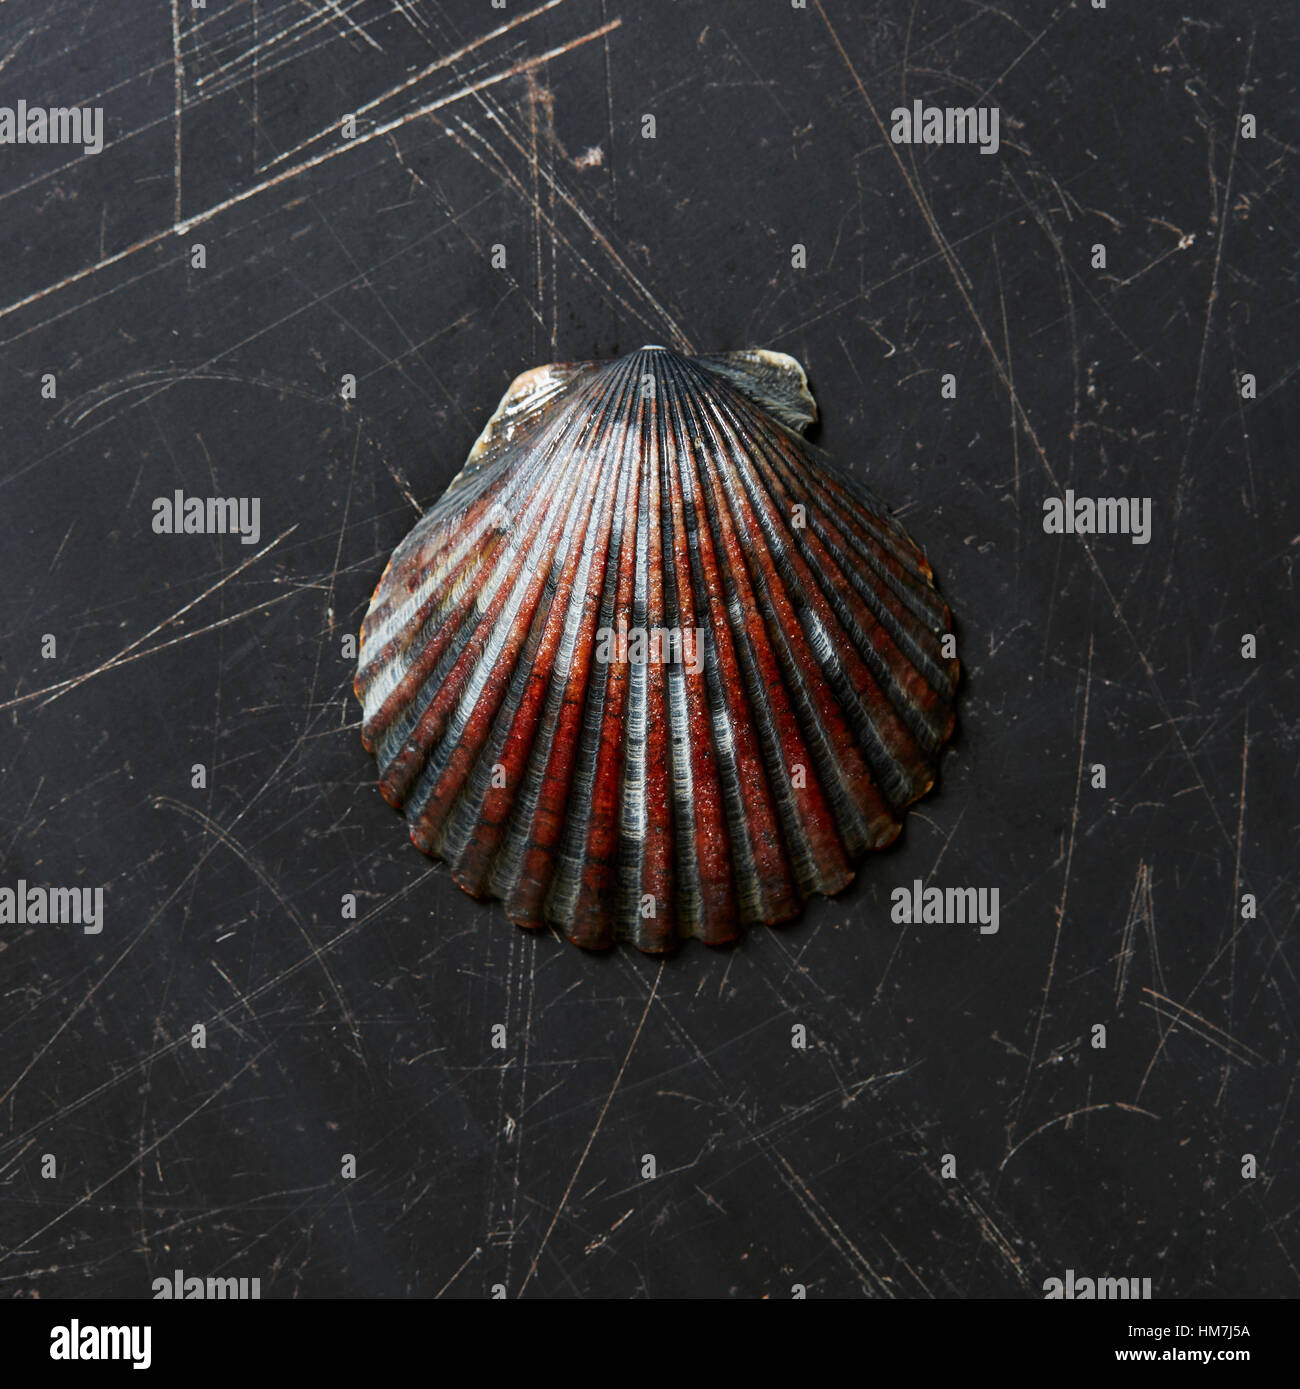 Seashell on dark surface Stock Photo